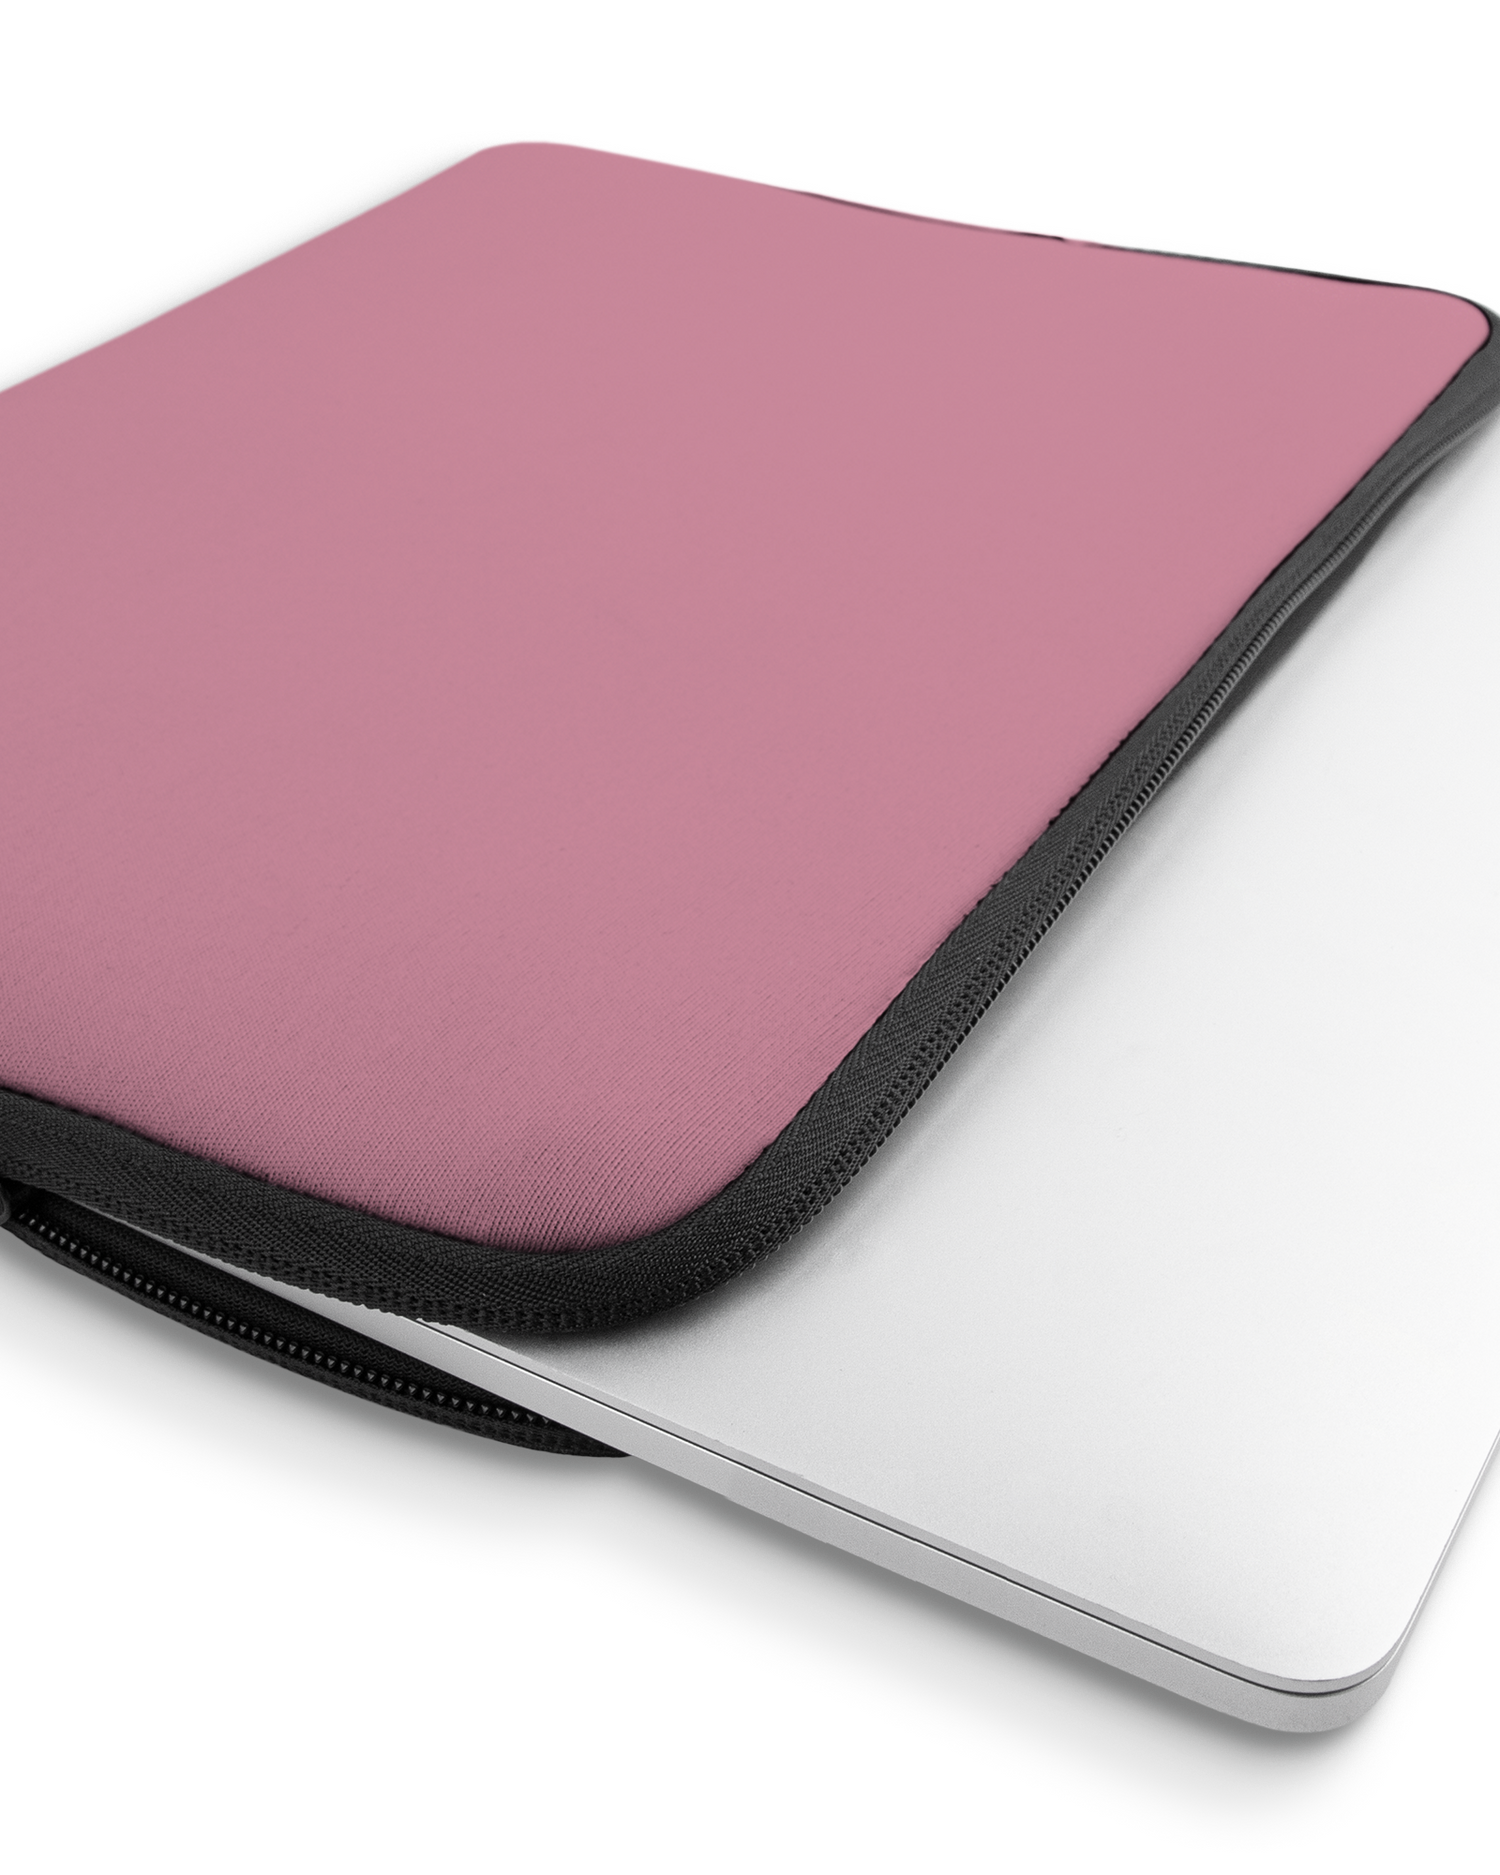 WILD ROSE Laptophülle 16 Zoll mit Gerät im Inneren